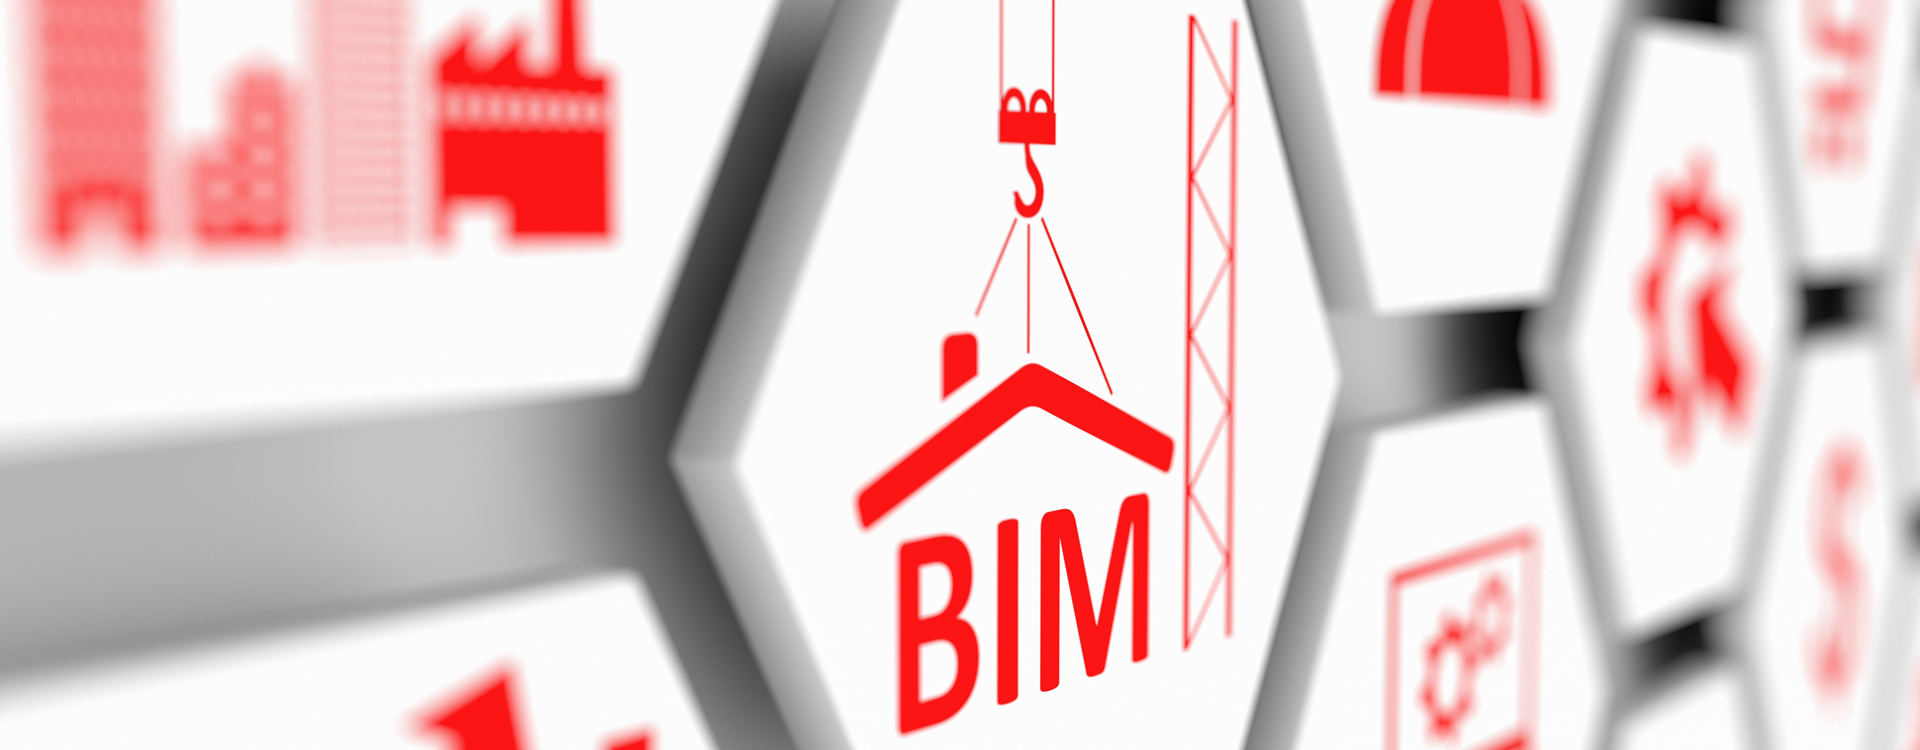 BIM – Building Information Modeling.